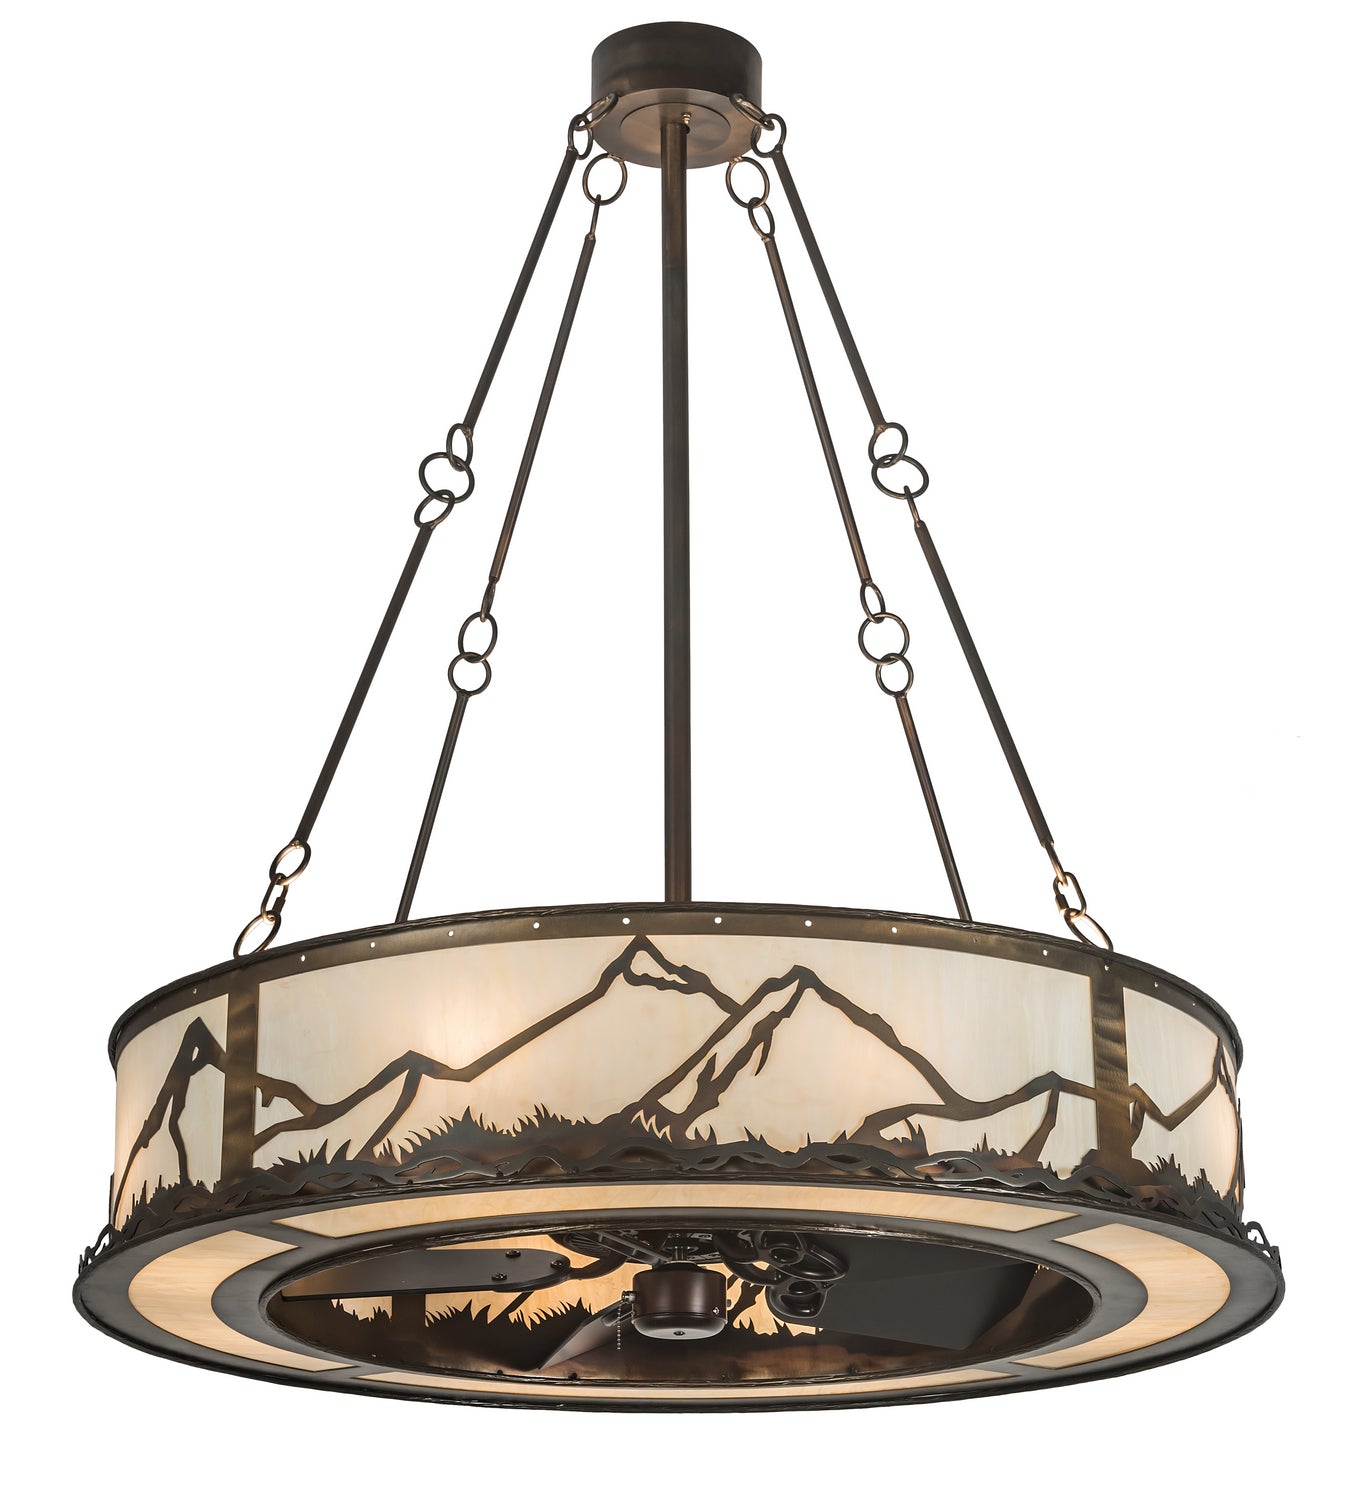 Meyda Tiffany Mountain Range 190518 Ceiling Fan - Antique Copper